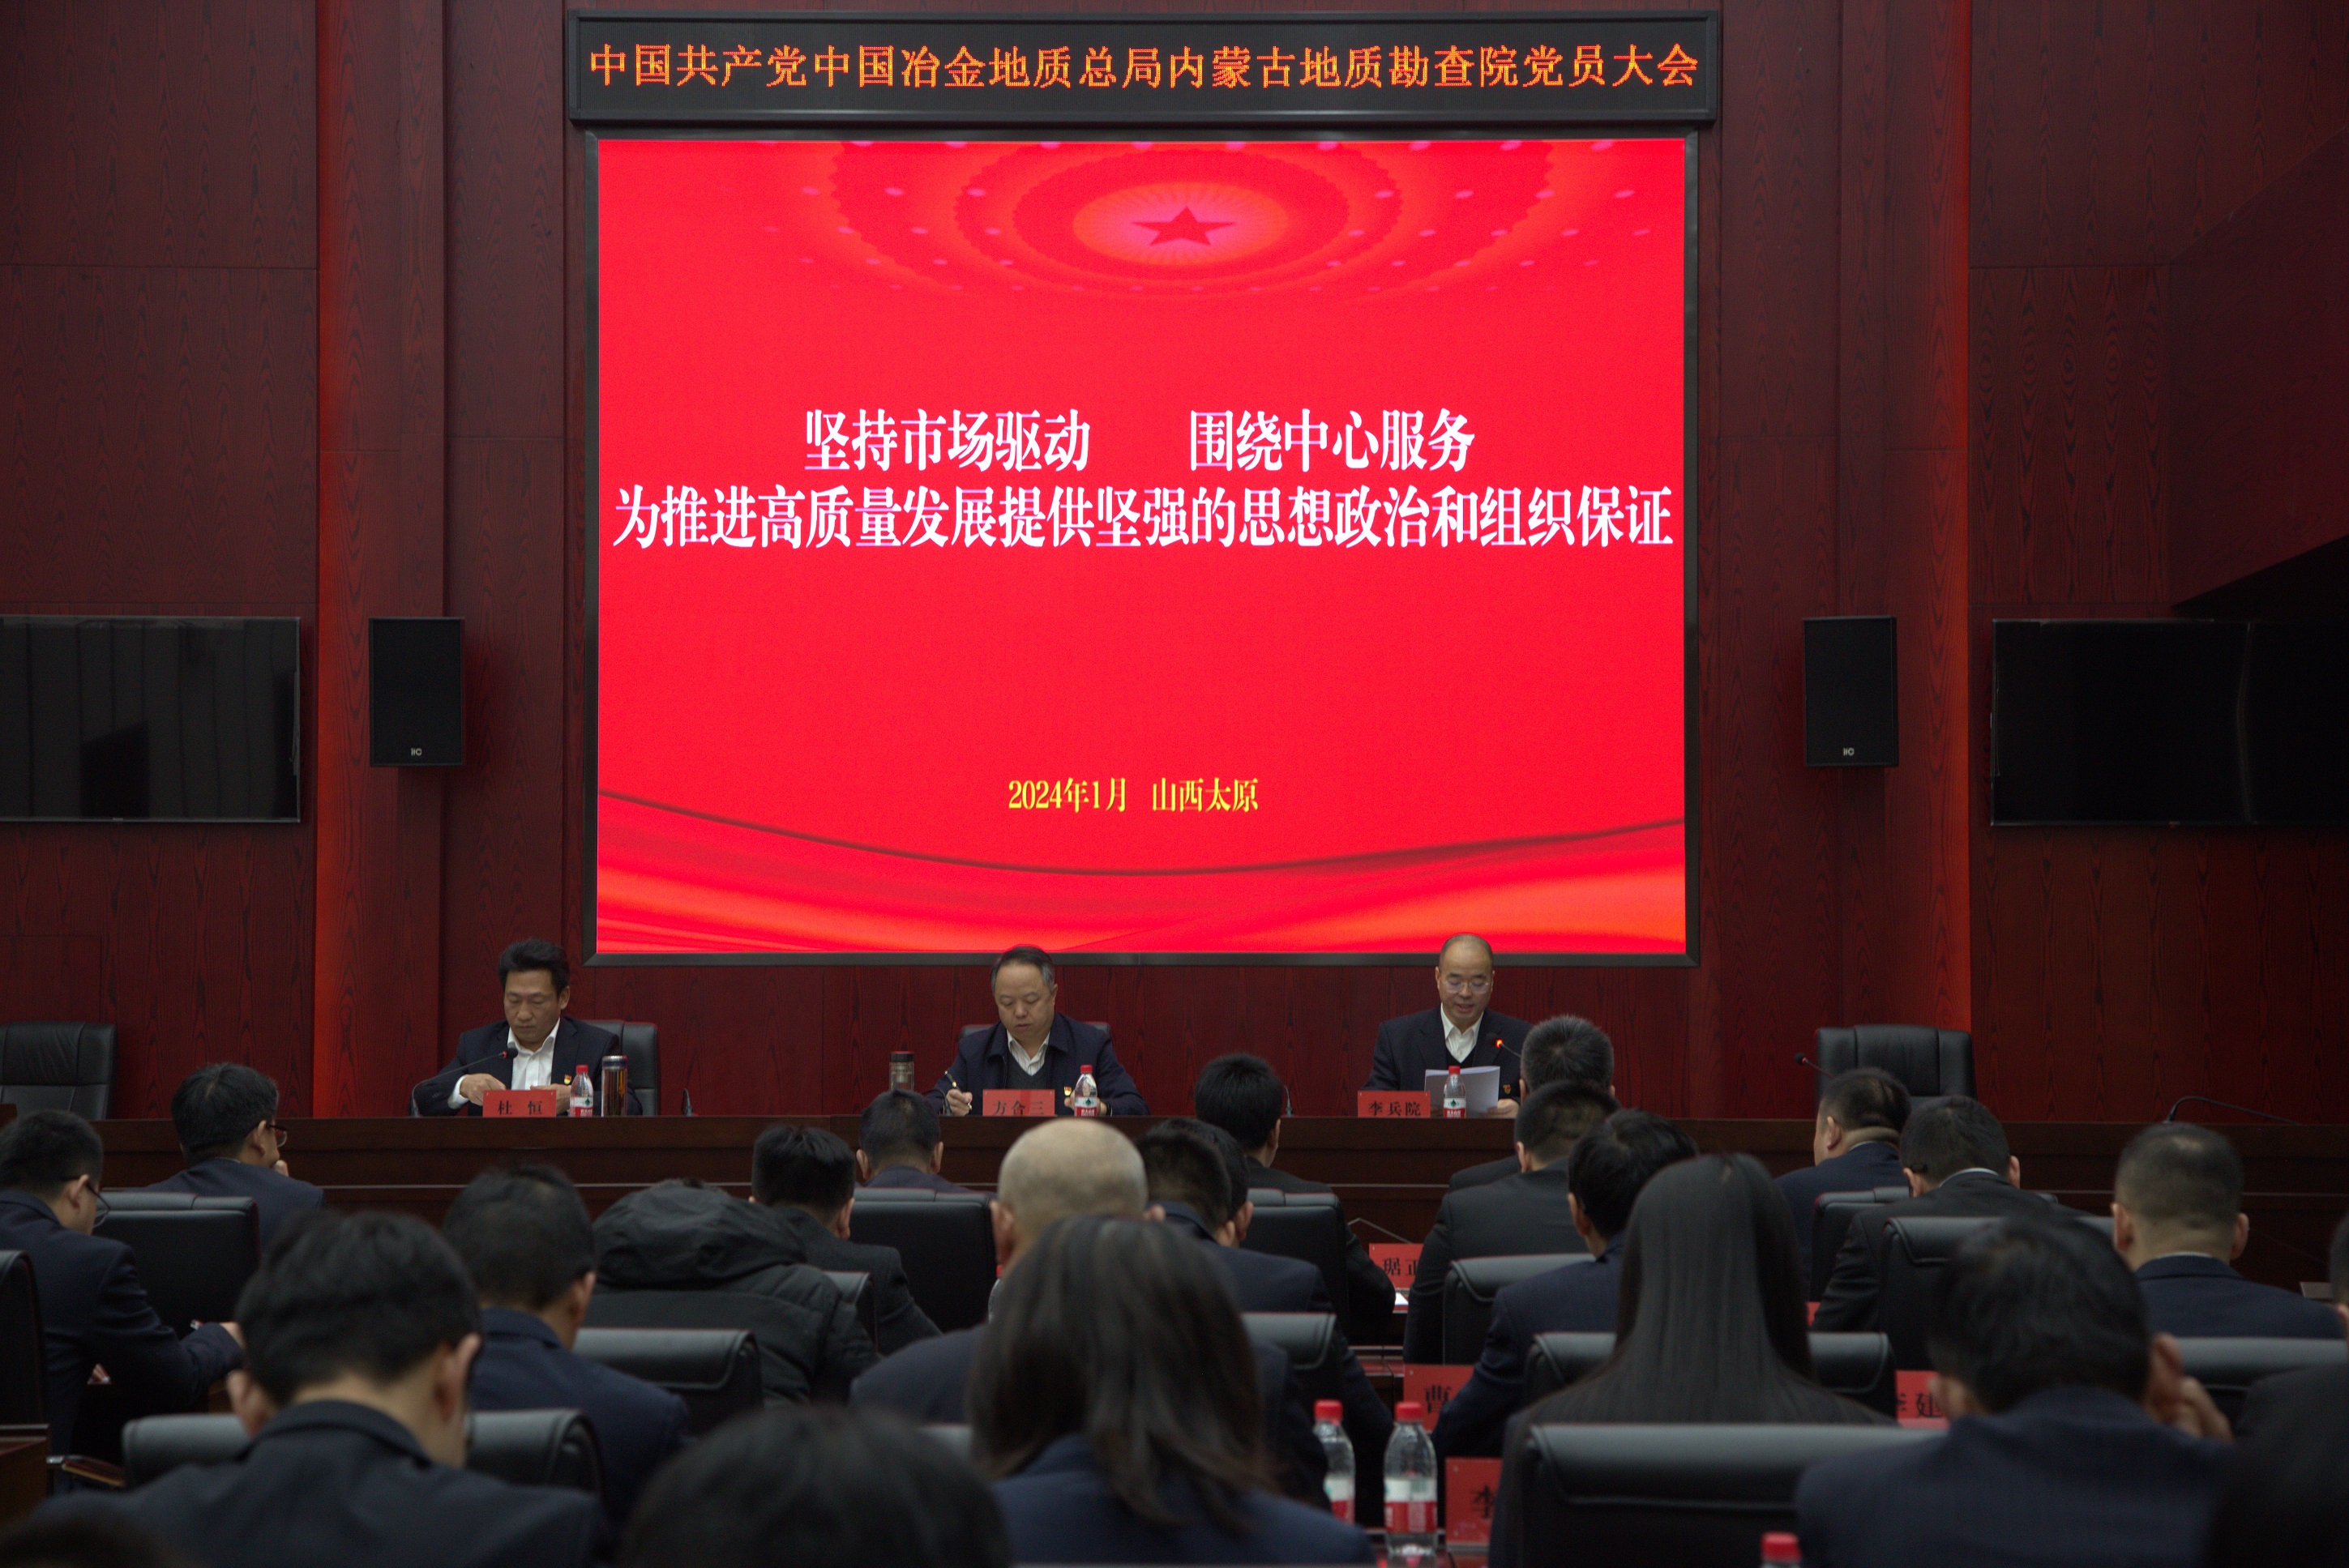 中国共产党中国冶金地质总局内蒙古地质勘查院党员大会